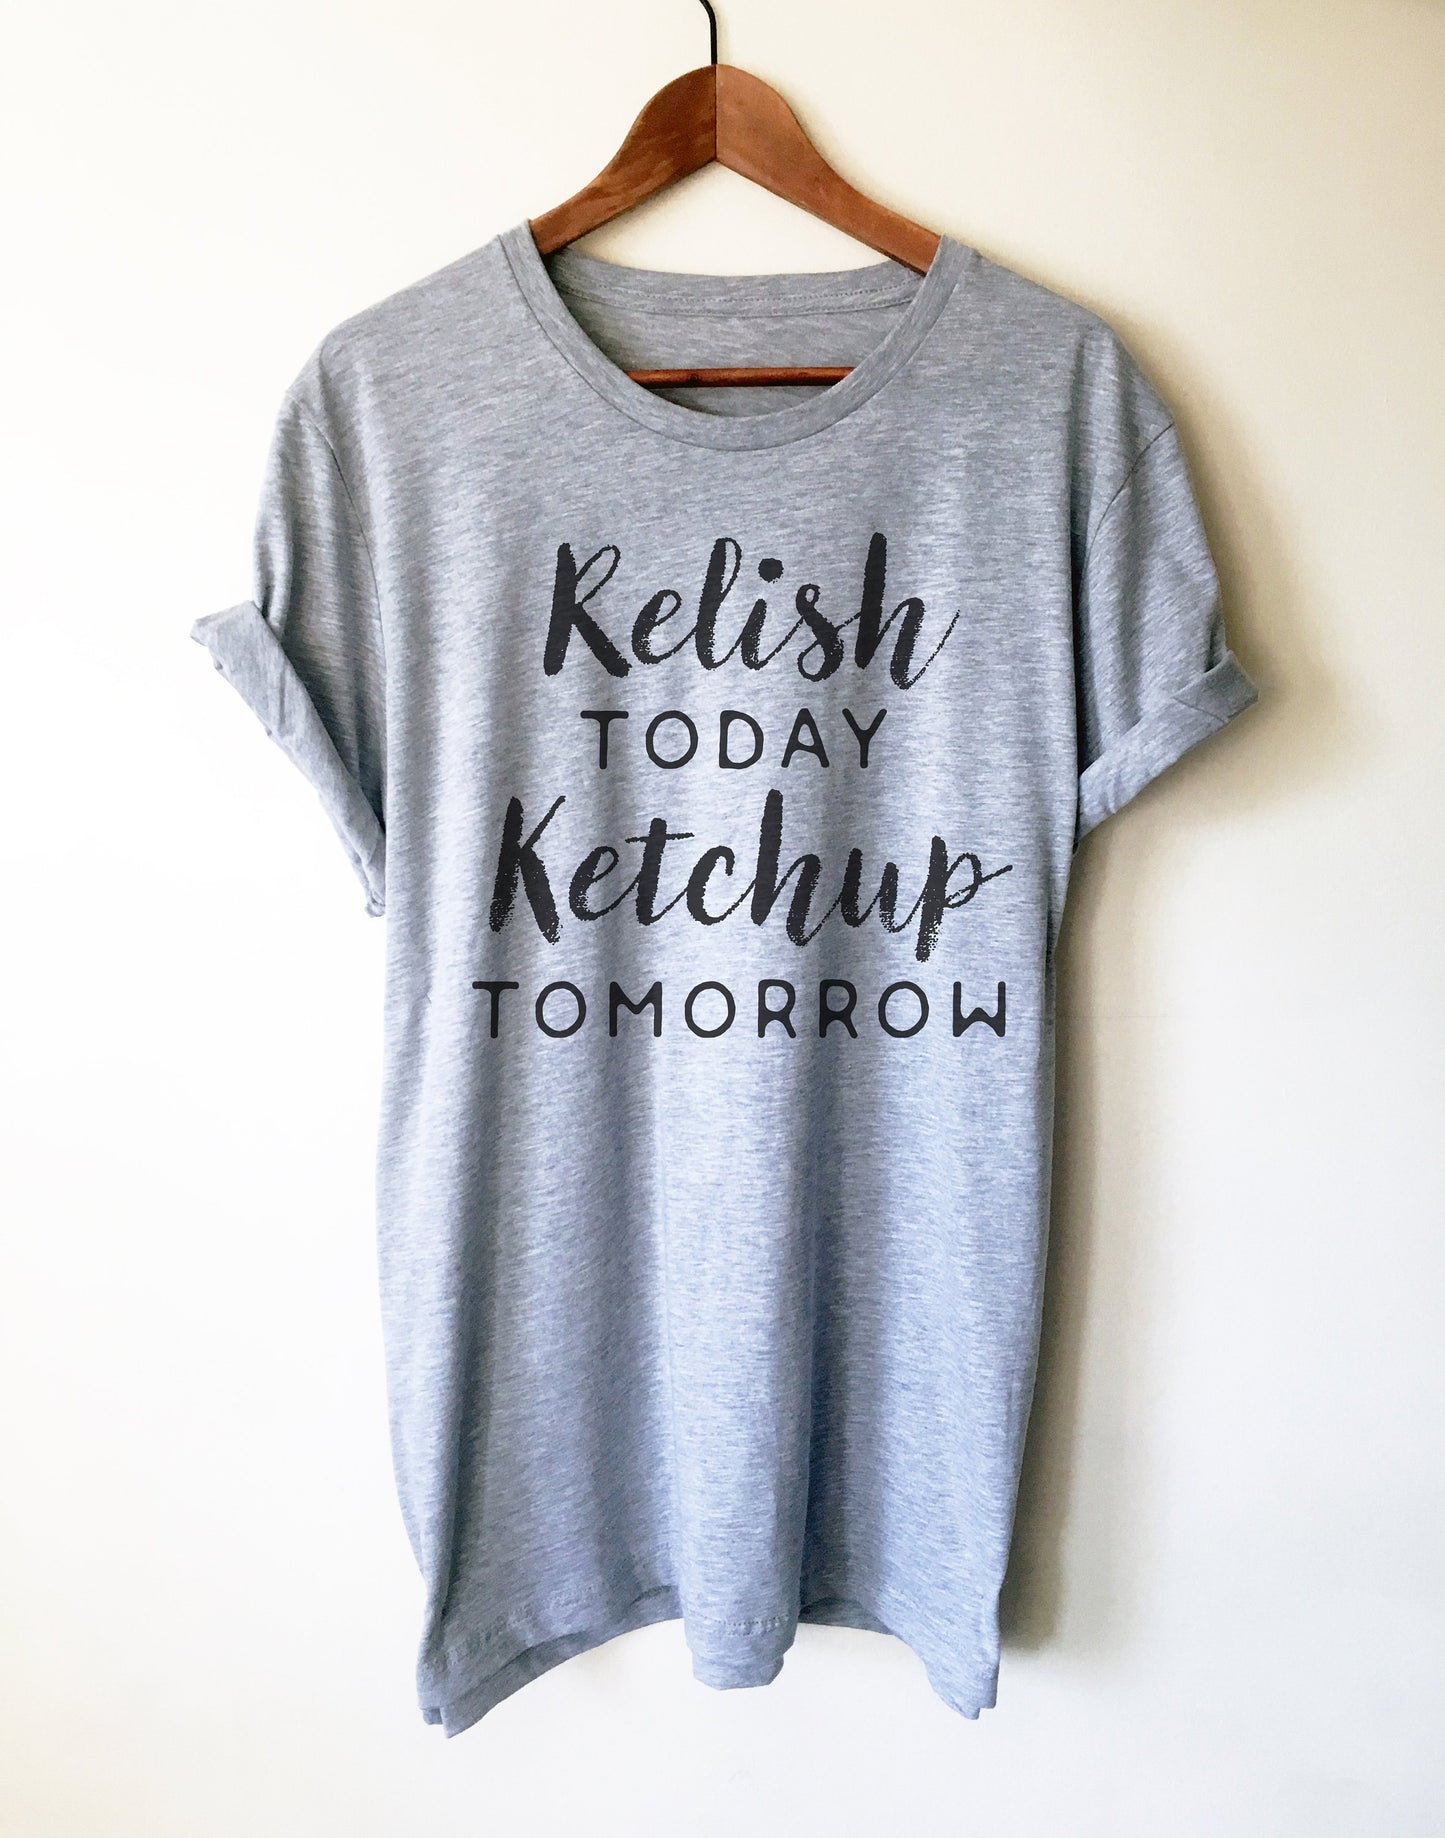 Relish Today Ketchup Tomorrow